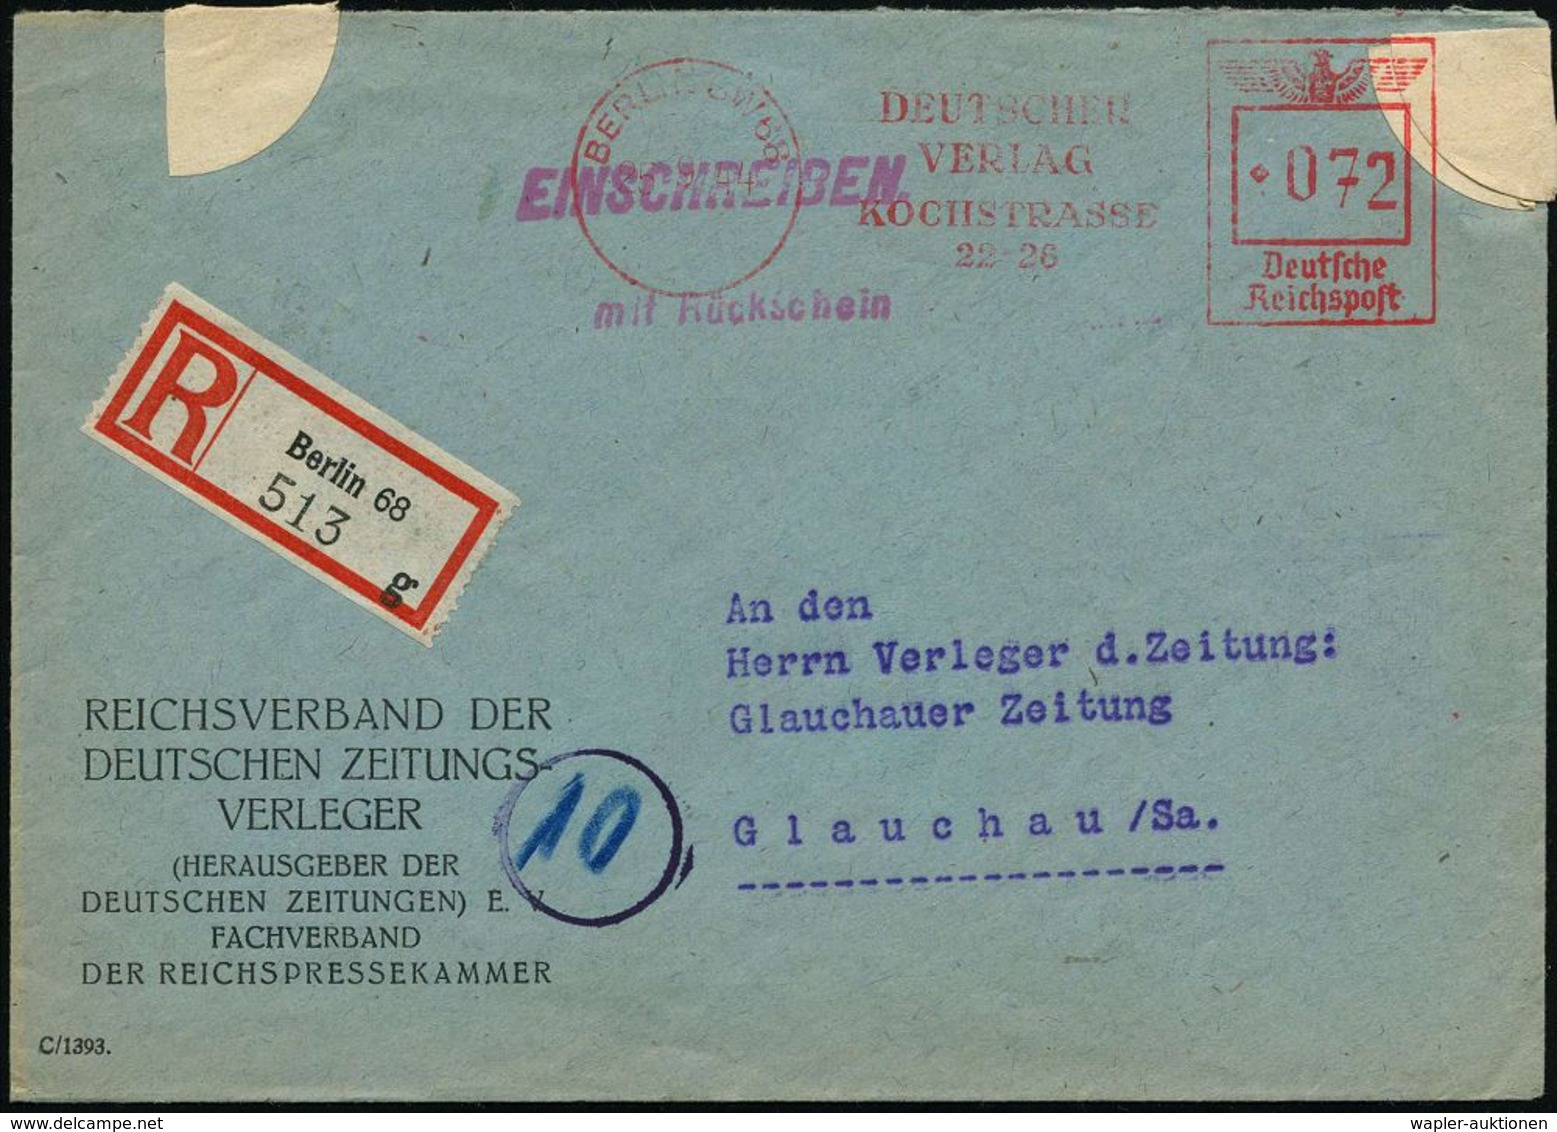 BERLIN SW 68/ DEUTSCHER/ VERLAG/ KOCHSTRASSE/ 22-26 1944 (25.9.) AFS 072 Pf. = "arisierter" Ullstein-Verlag Via Cautio-G - Judaika, Judentum